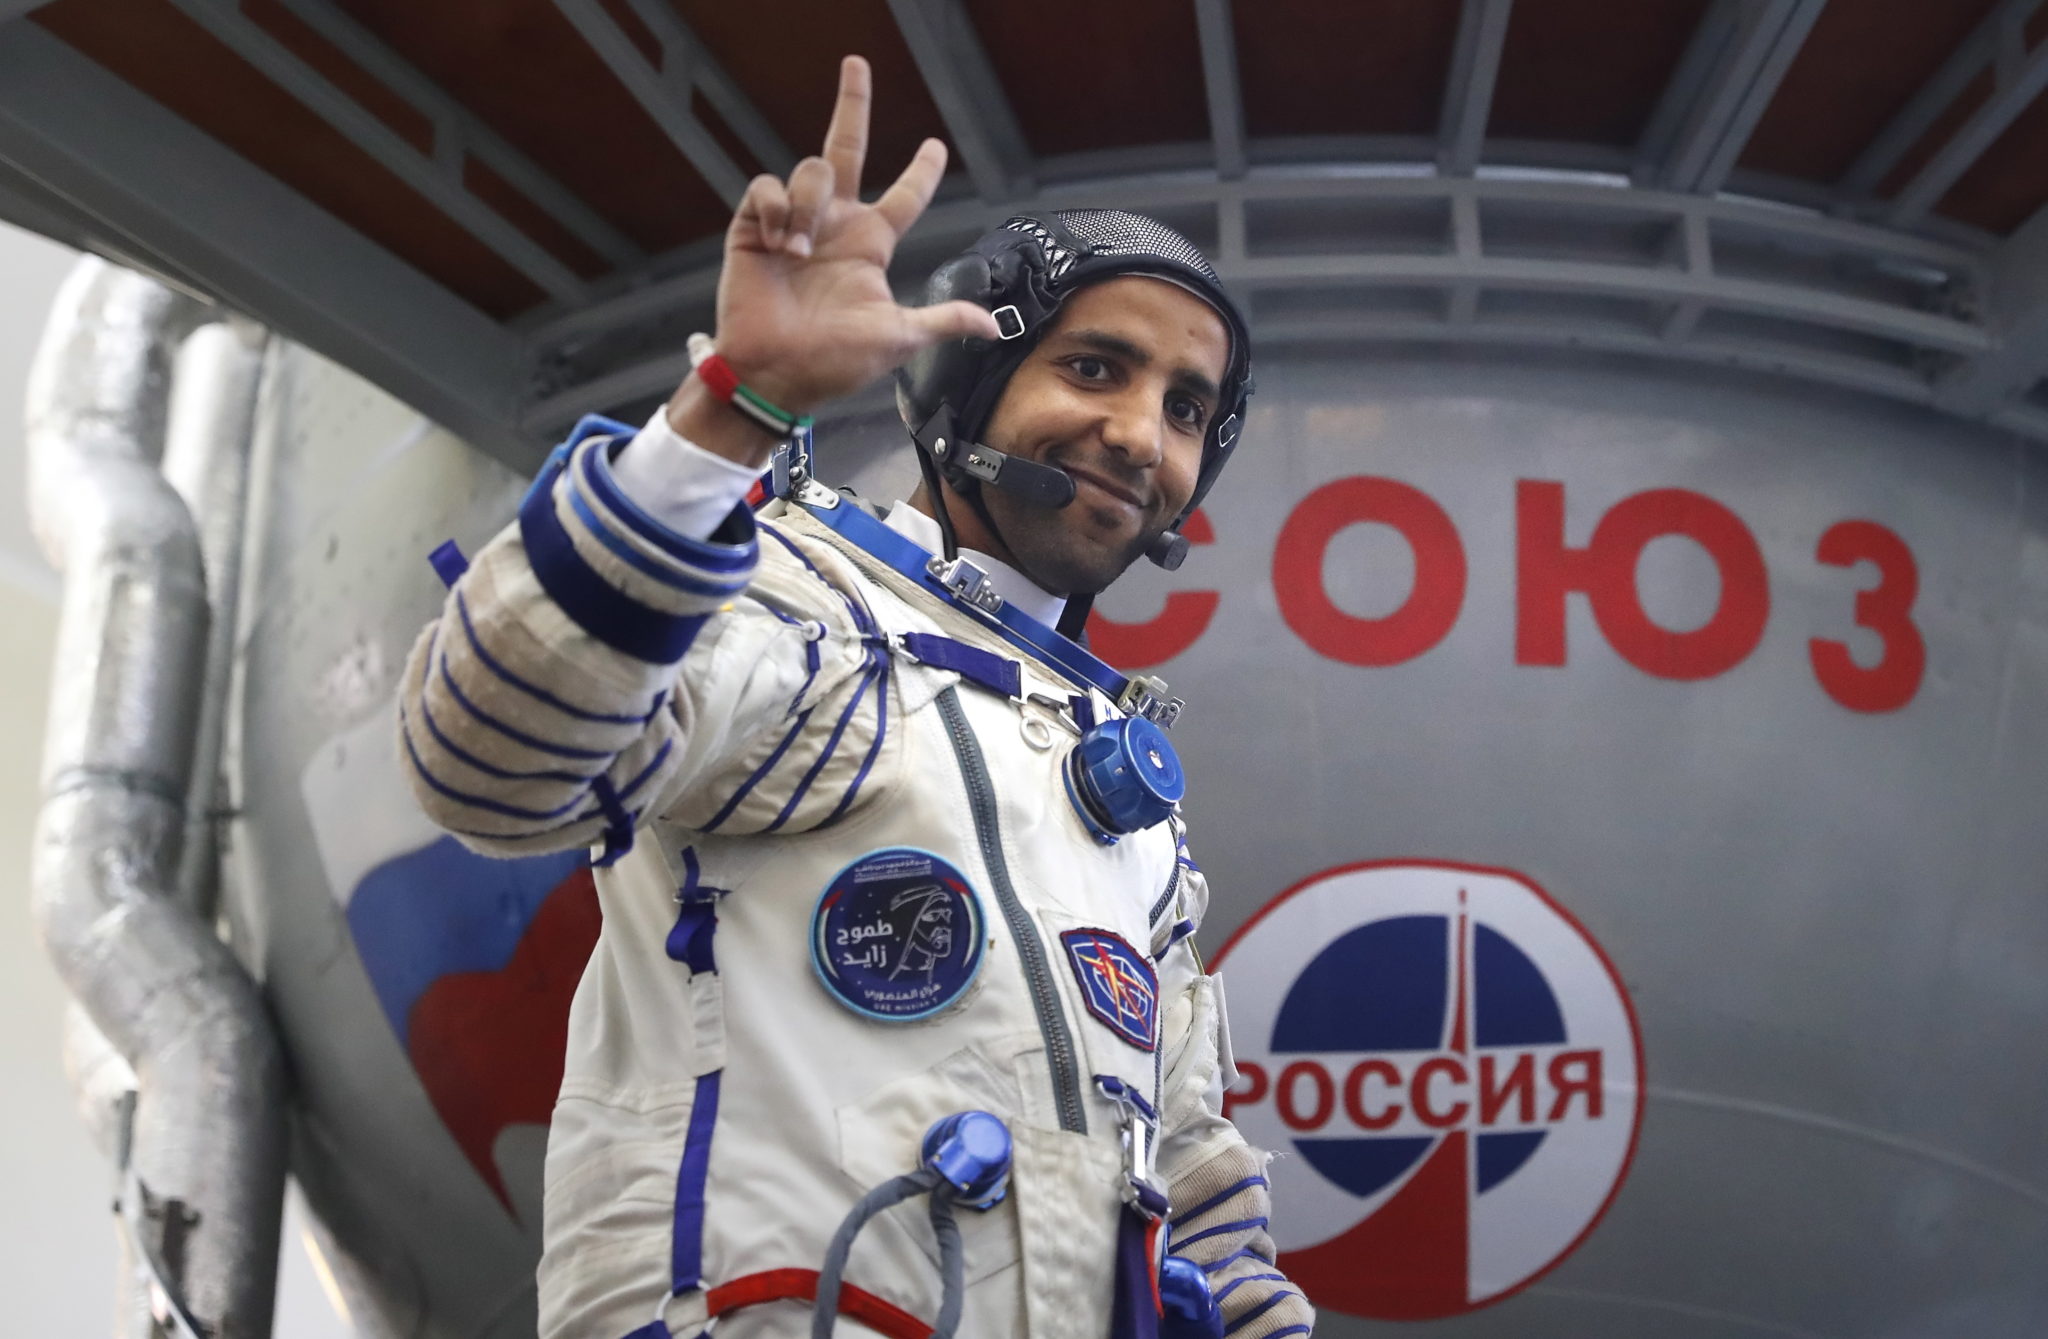 ROSJA: astronauta ze Zjednoczonych Emiratów Arabskich Hazza Al Mansouri uczestniczy w egzaminach końcowych w rosyjskim centrum szkoleniowym kosmonautów w Star City obok Moskwy. 30 sierpnia 2019 r. Mansouri będzie pierwszym Emiratem w kosmosie. Początek jego misji planowany jest 25 września. Fot. MAXIM SHIPENKOV/EPA.